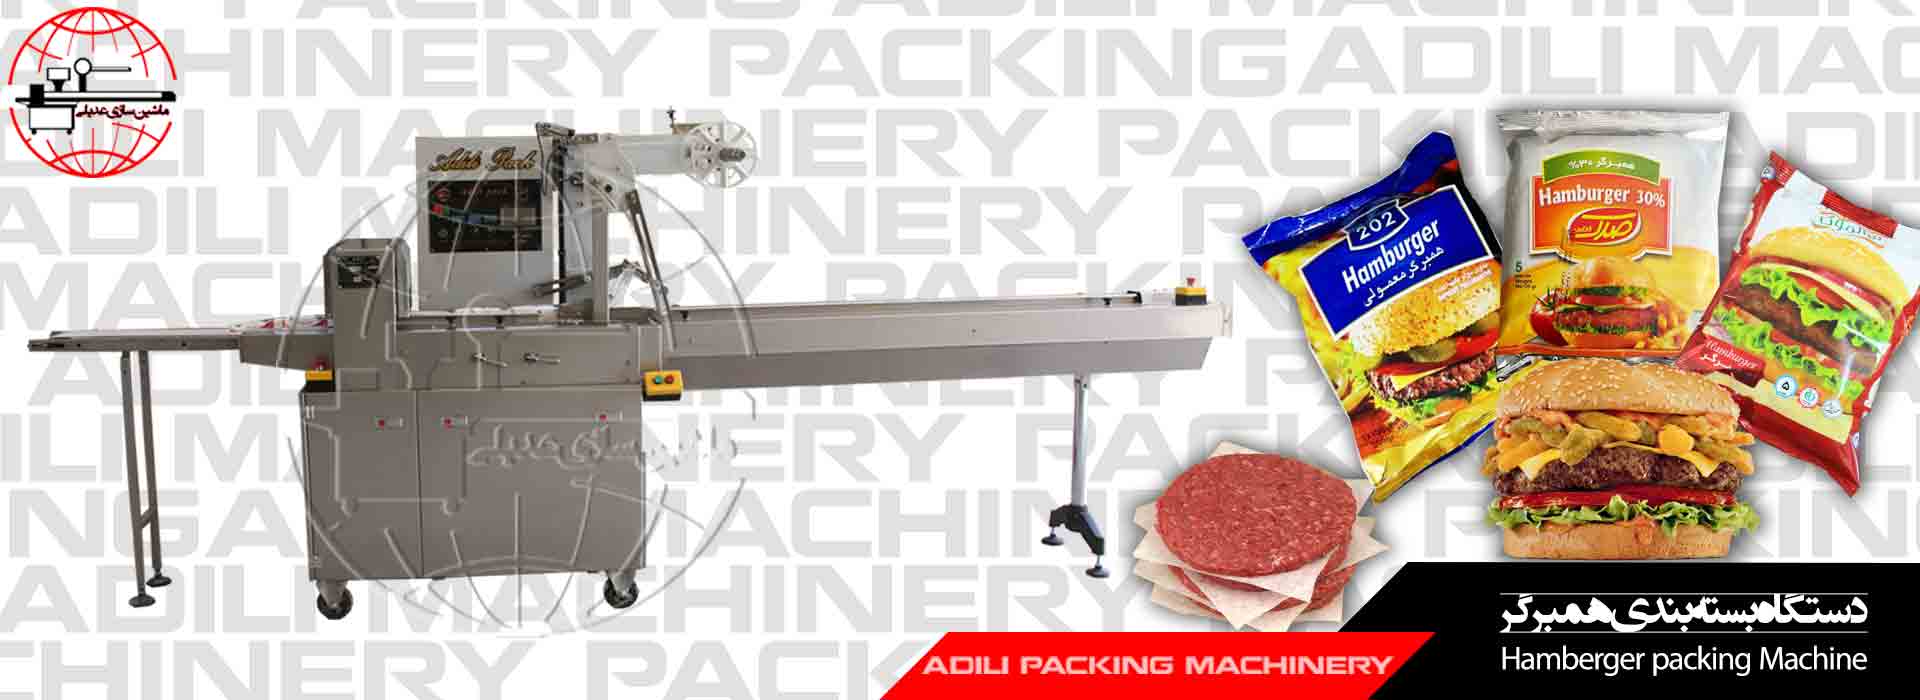 Hamburger packing machine